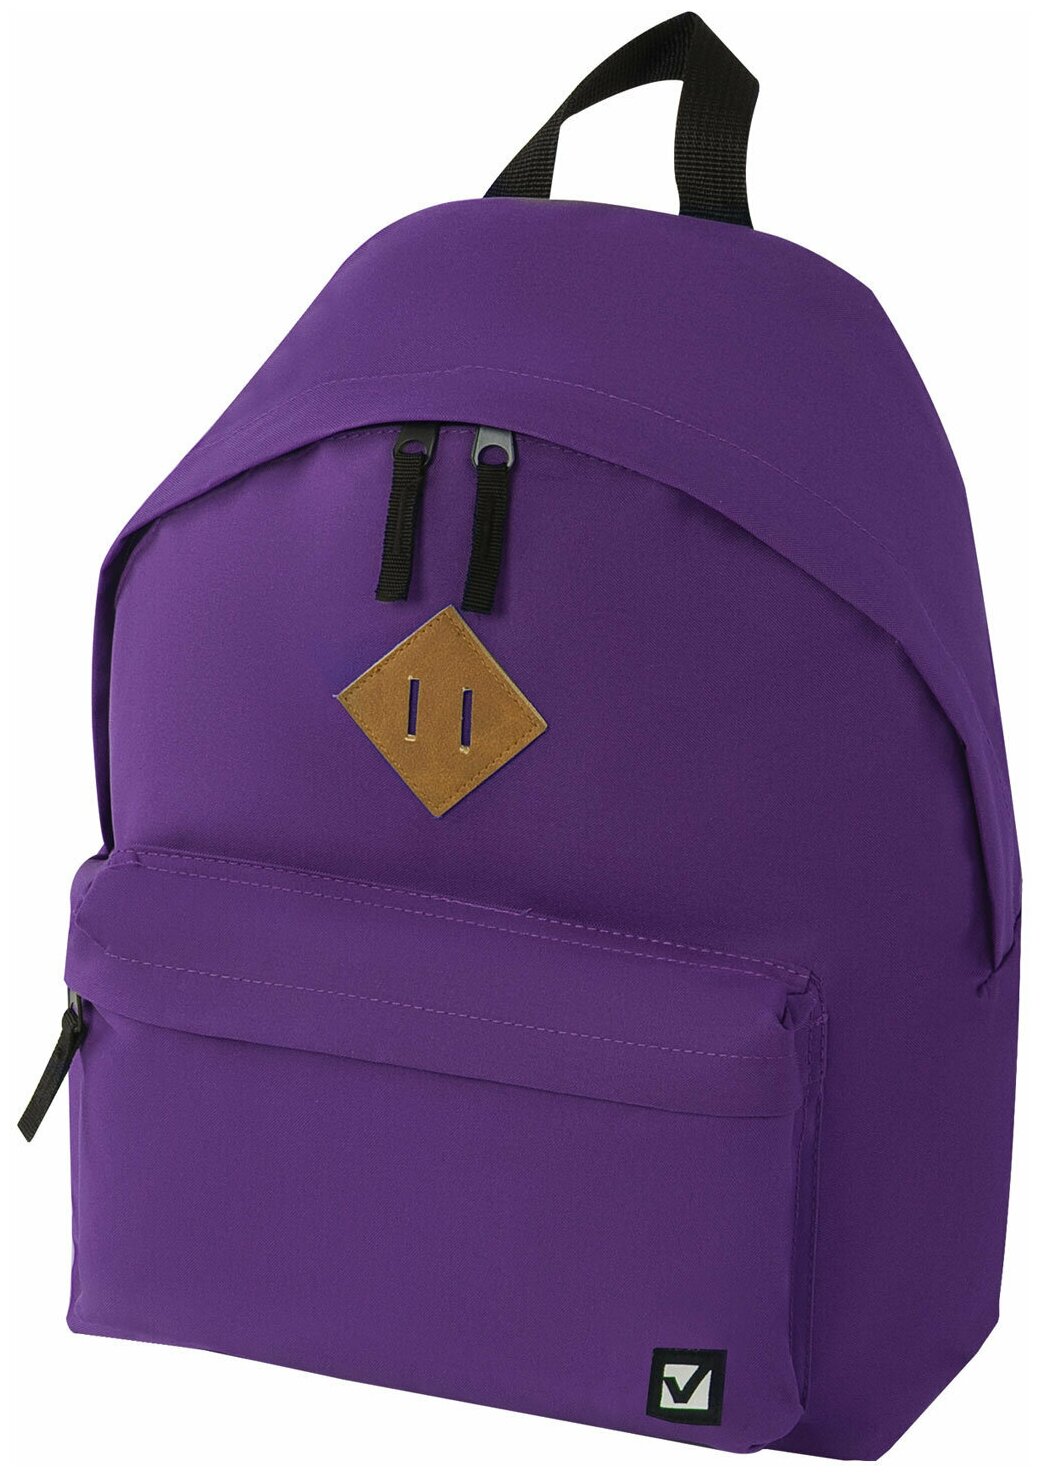 Рюкзак BRAUBERG сити-формат один тон, универсальный, фиолетовый, 41х32х14 см, 225376